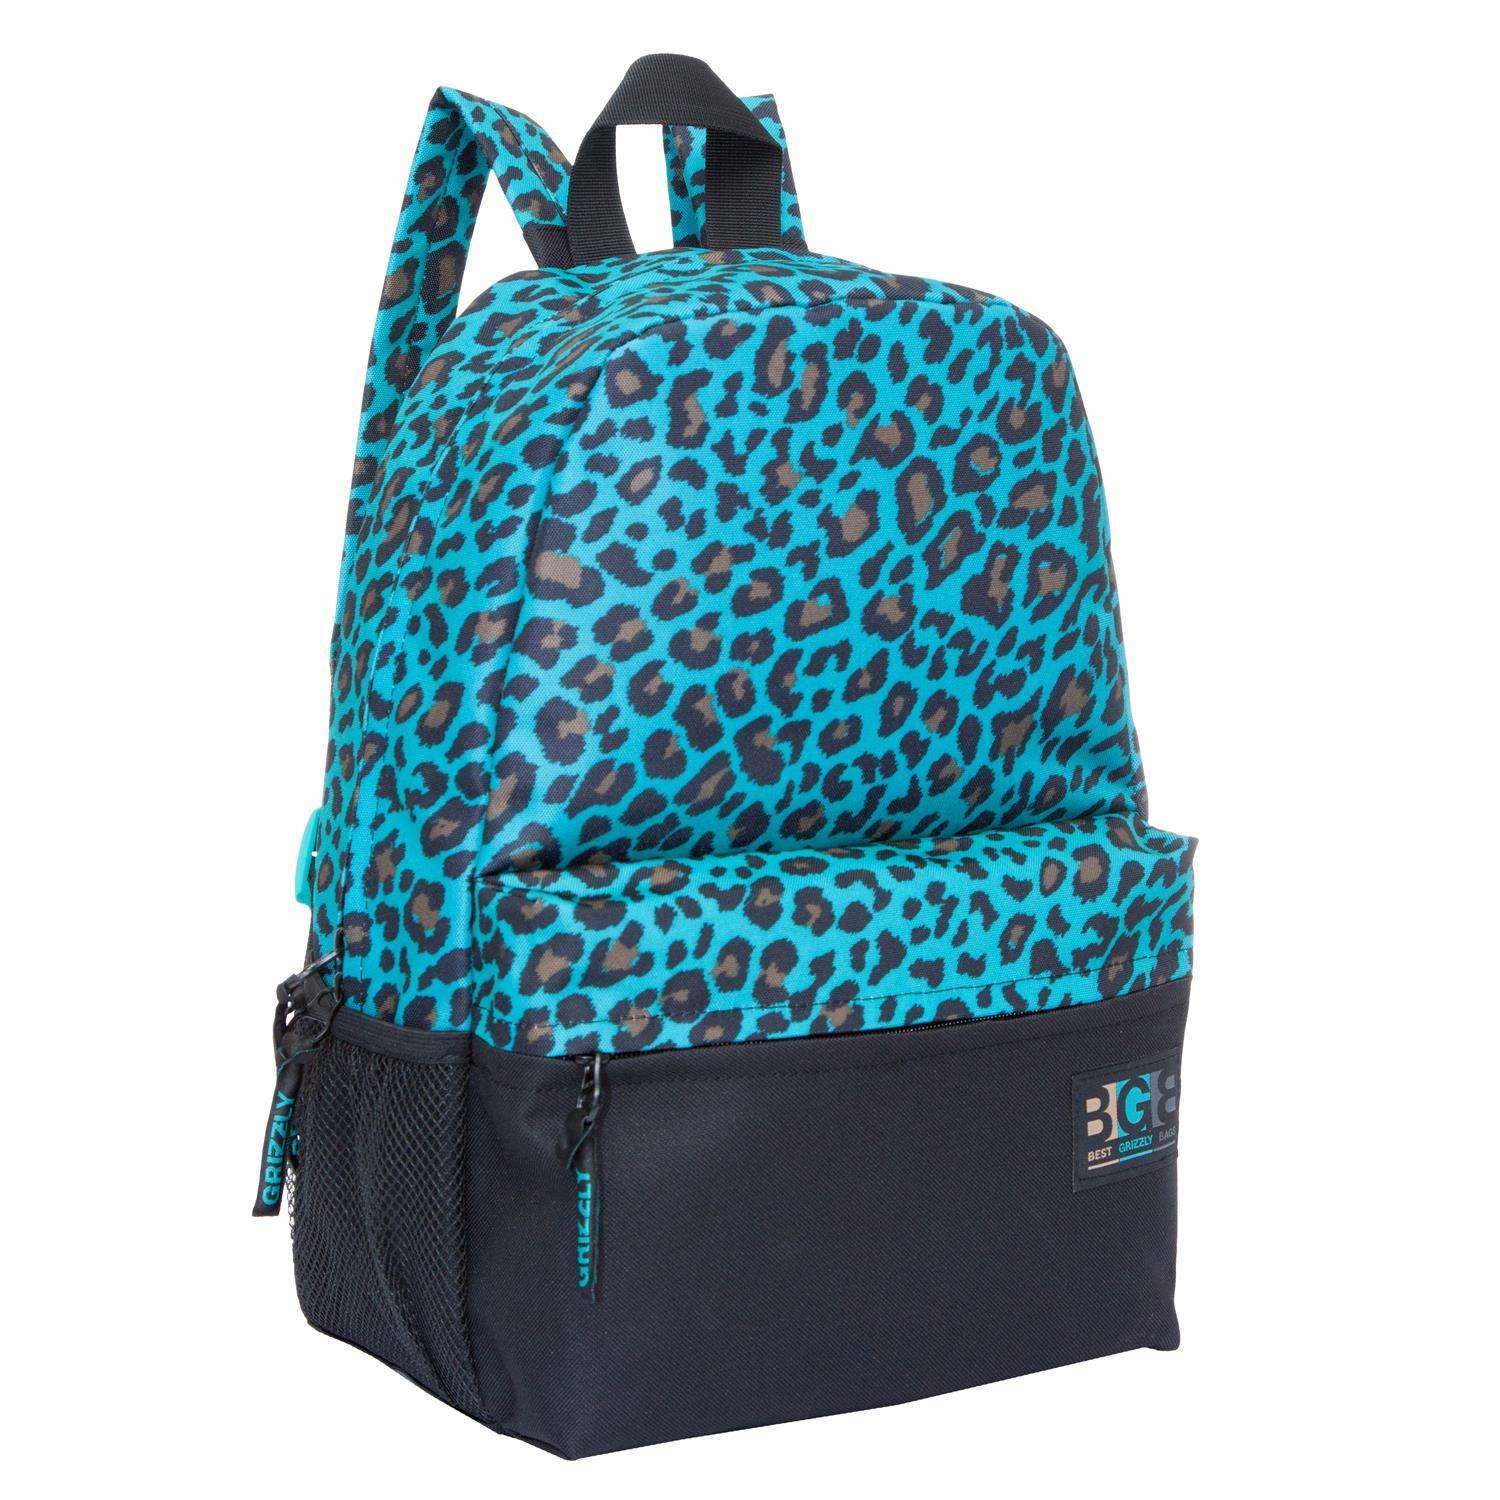 Рюкзак Grizzly для девочки бирюзовый леопард - фото 2